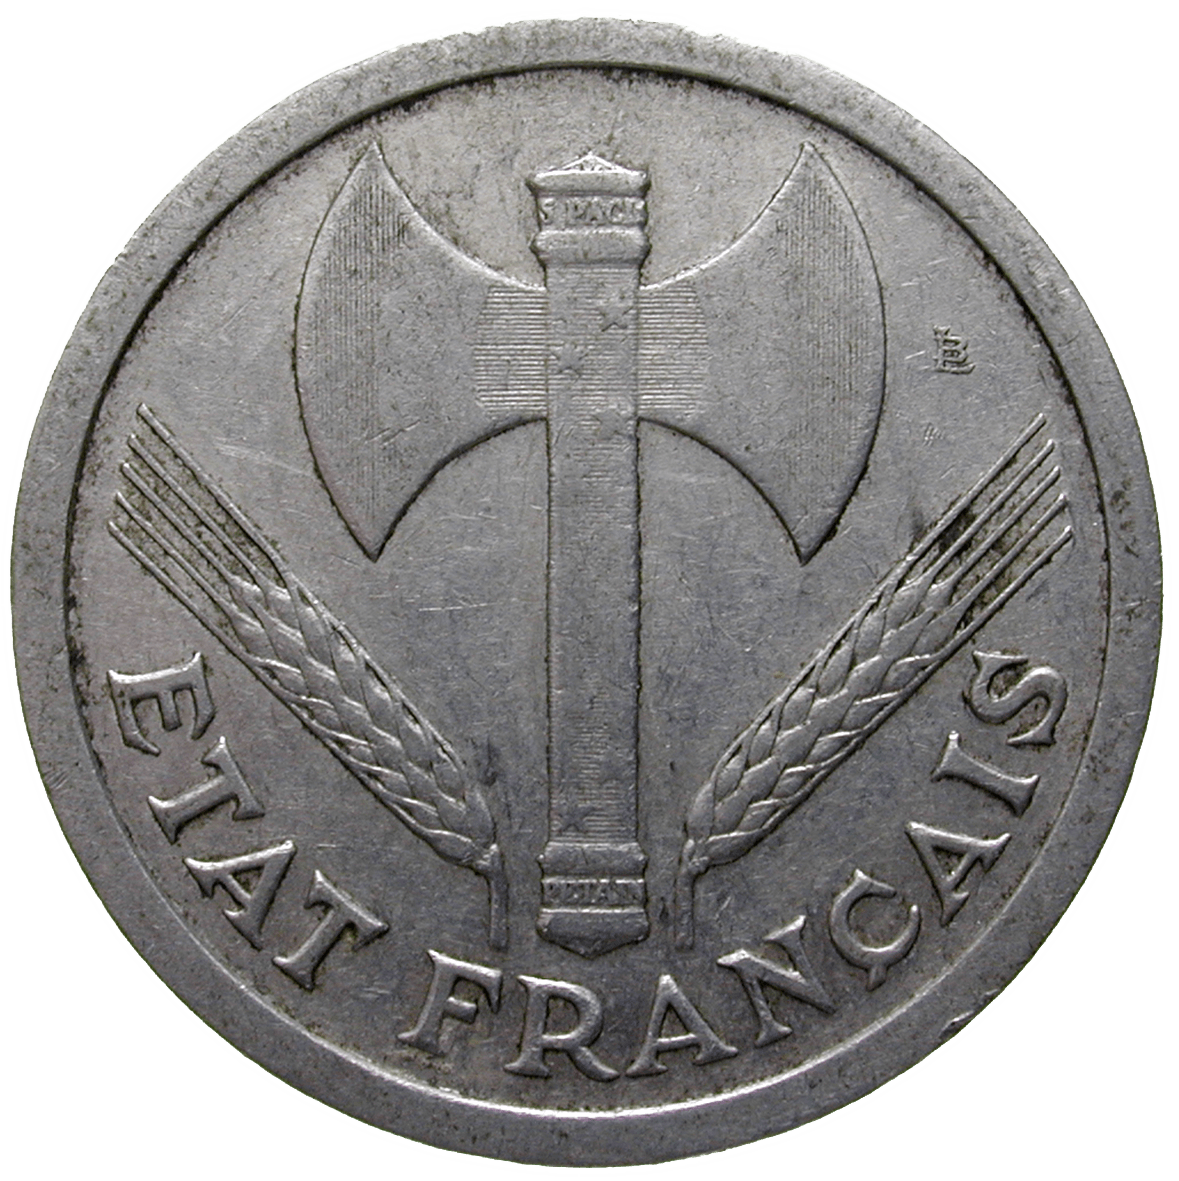 Frankreich, Etat Français, Philippe Pétain, 2 Francs 1943 (obverse)